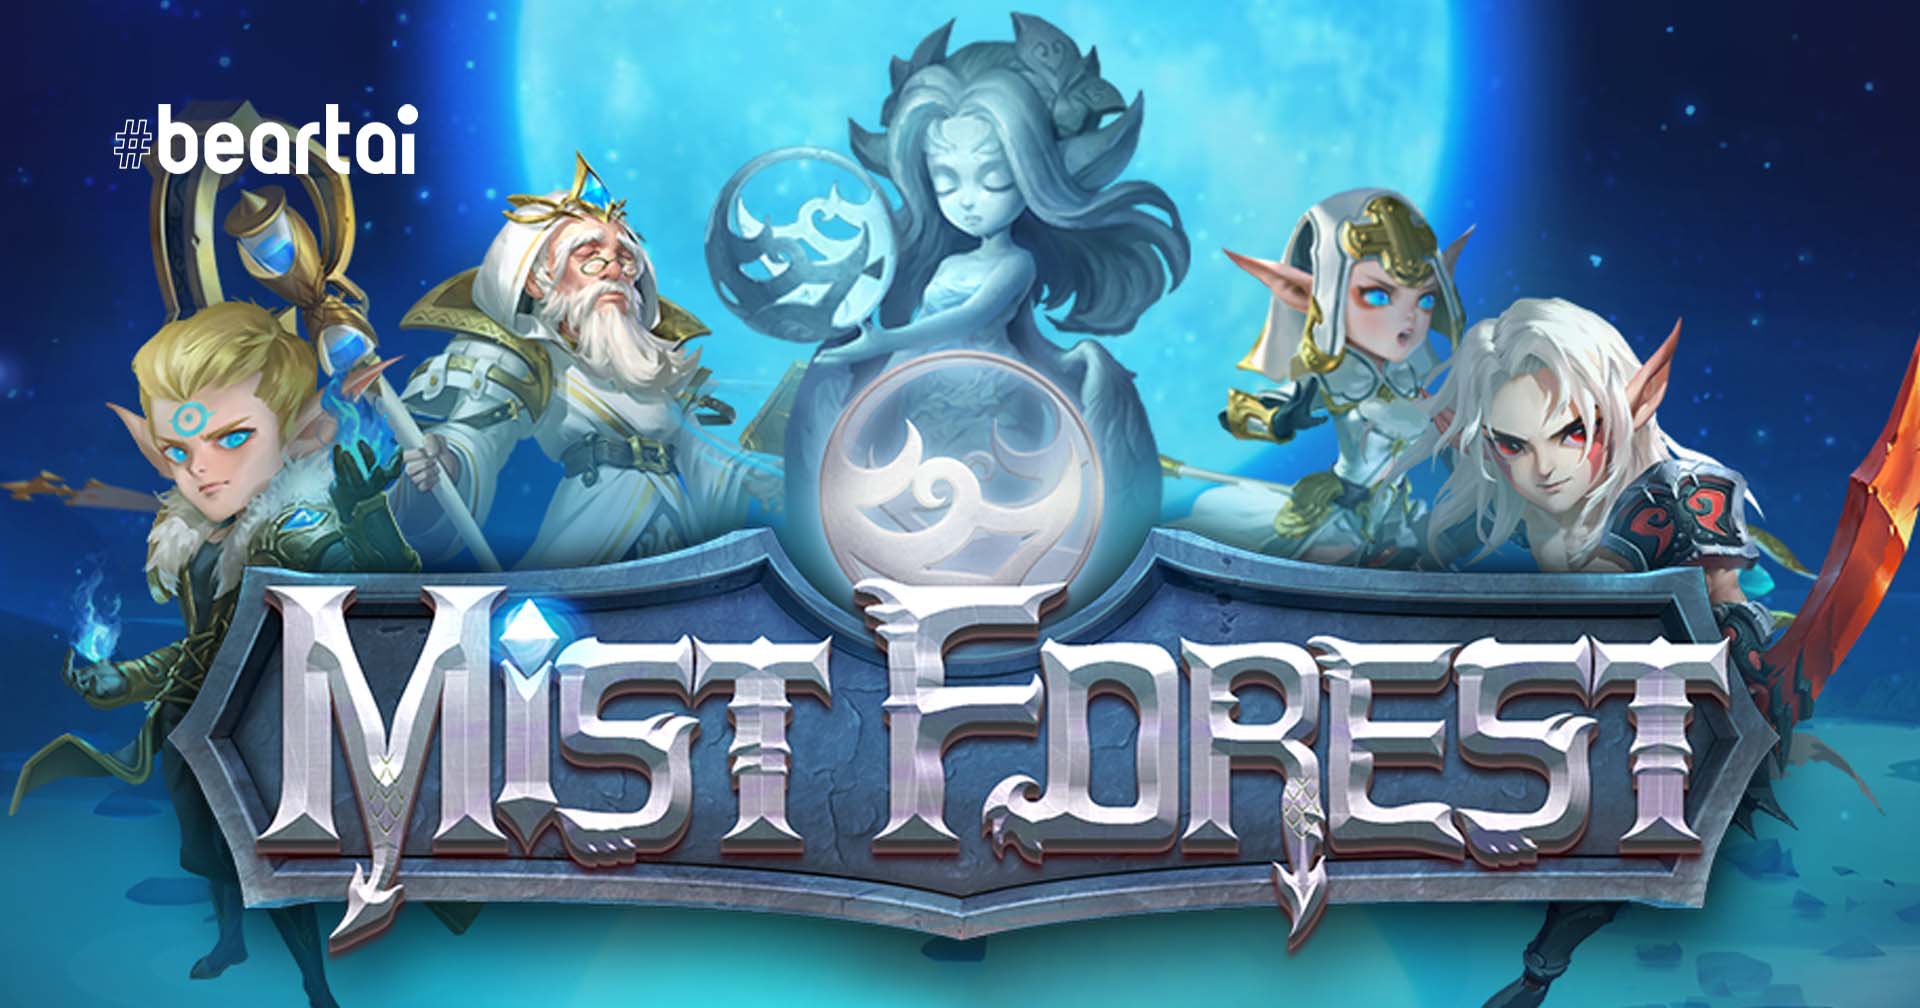 [รีวิวเกม] Mist Forest เกม Idle RPG เนื้อเรื่องเด่น ตัวละครน่าสนใจ